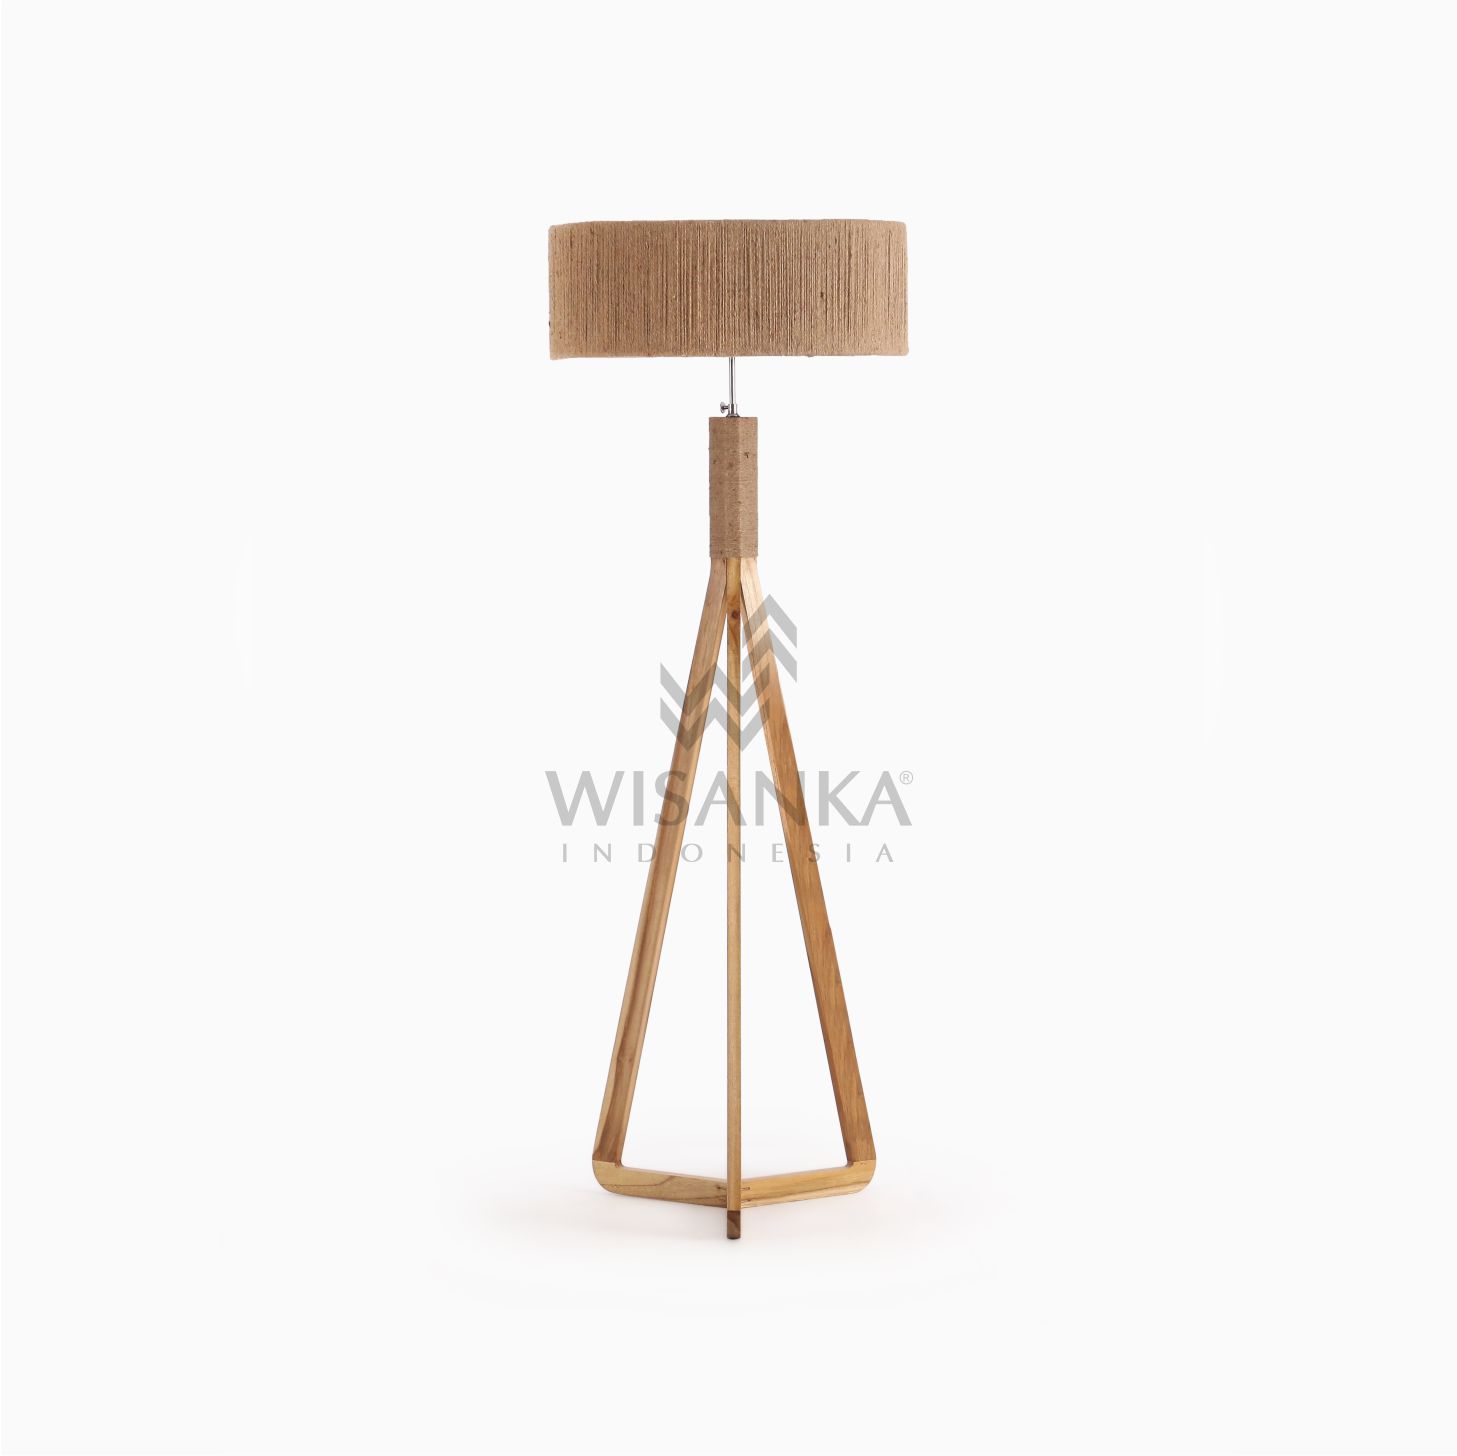 wooden floor lamps for sale